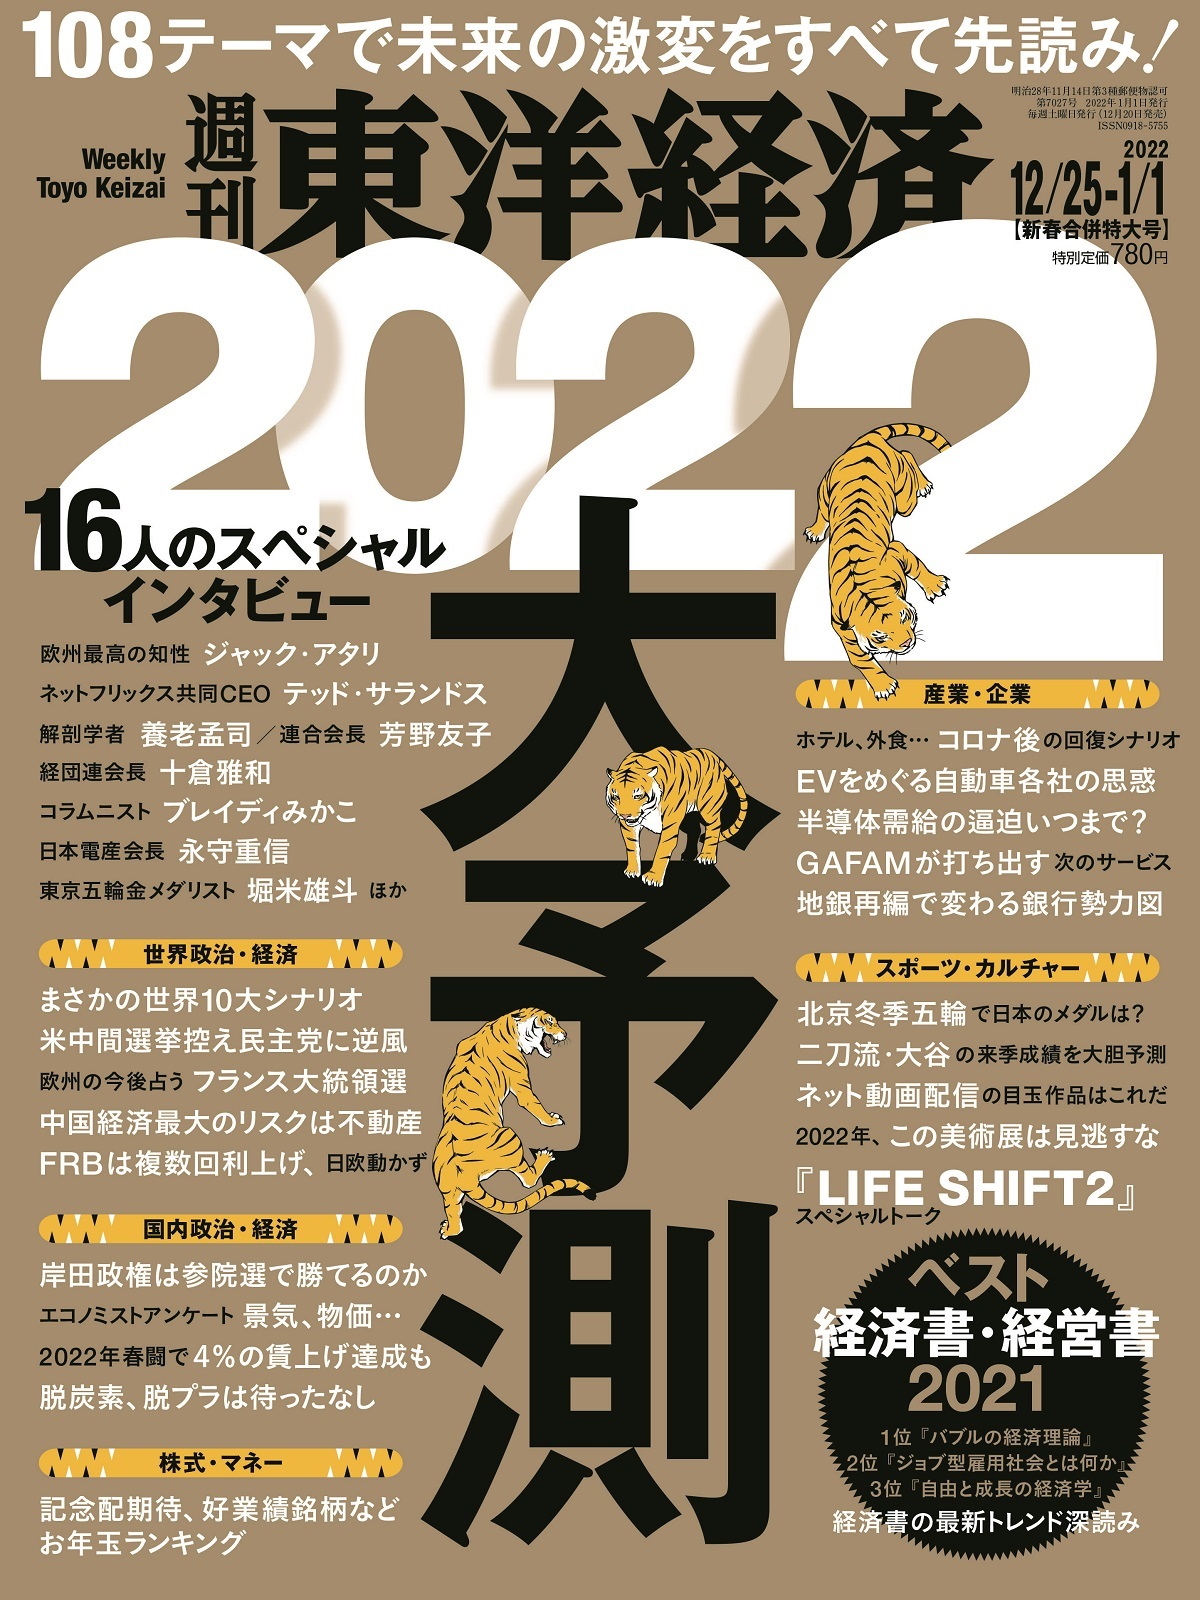 週刊東洋経済2021年12/25-2022年1/1日新春合併特大号 東洋経済STORE